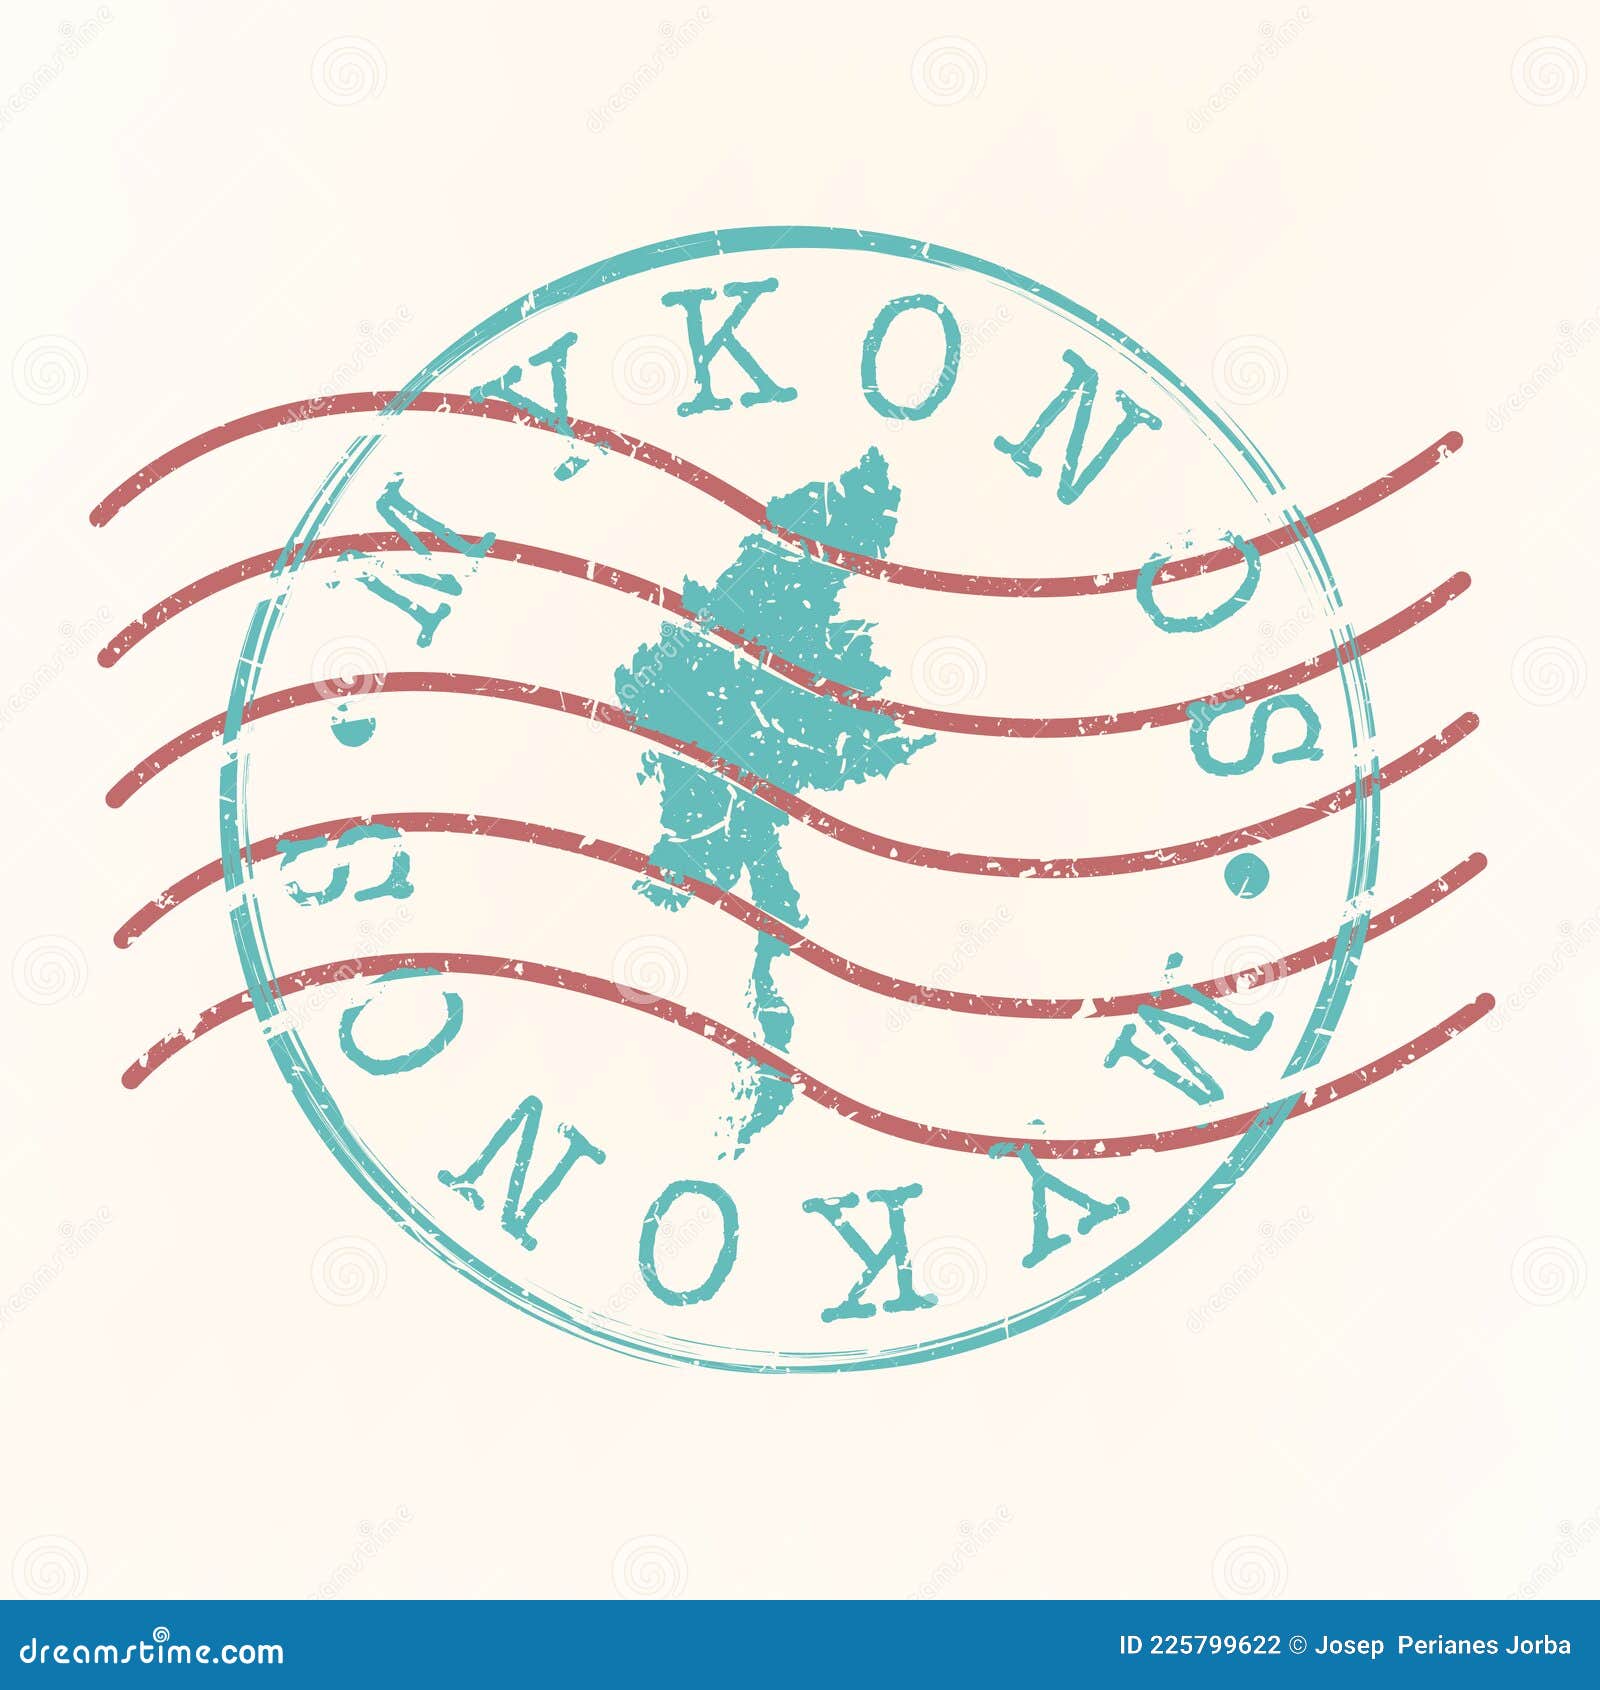 mikonos greece stamp postal. map silhouette seal. passport round .  icon.  retro travel.